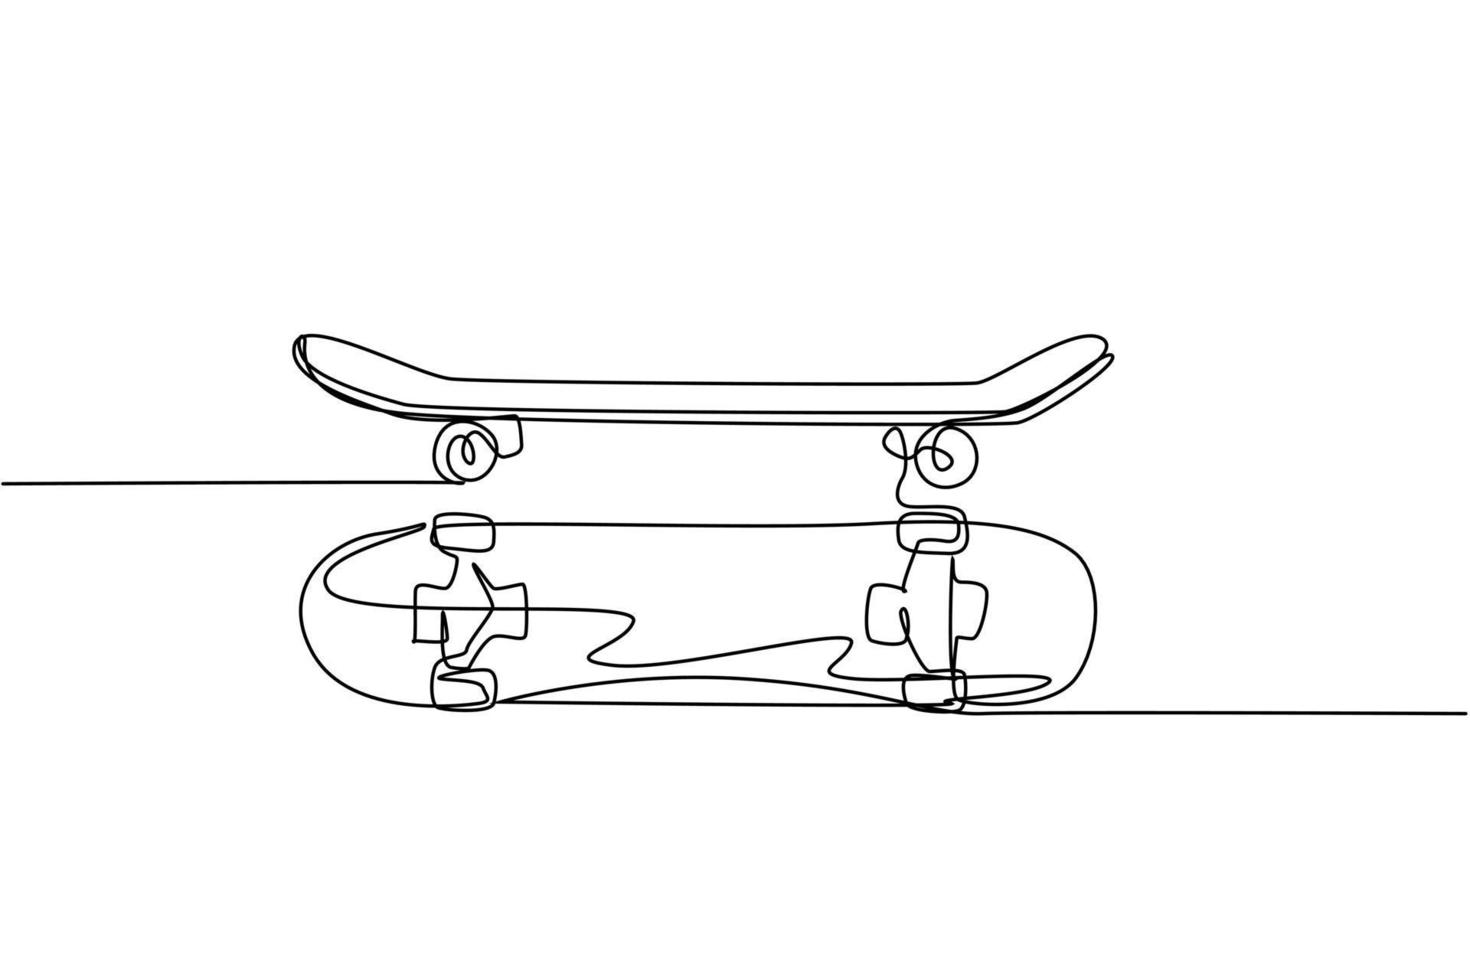 um desenho de linha contínua de um antigo skate retro, vista lateral e superior. ilustração em vetor hipster extremo clássico esporte conceito linha única desenho gráfico